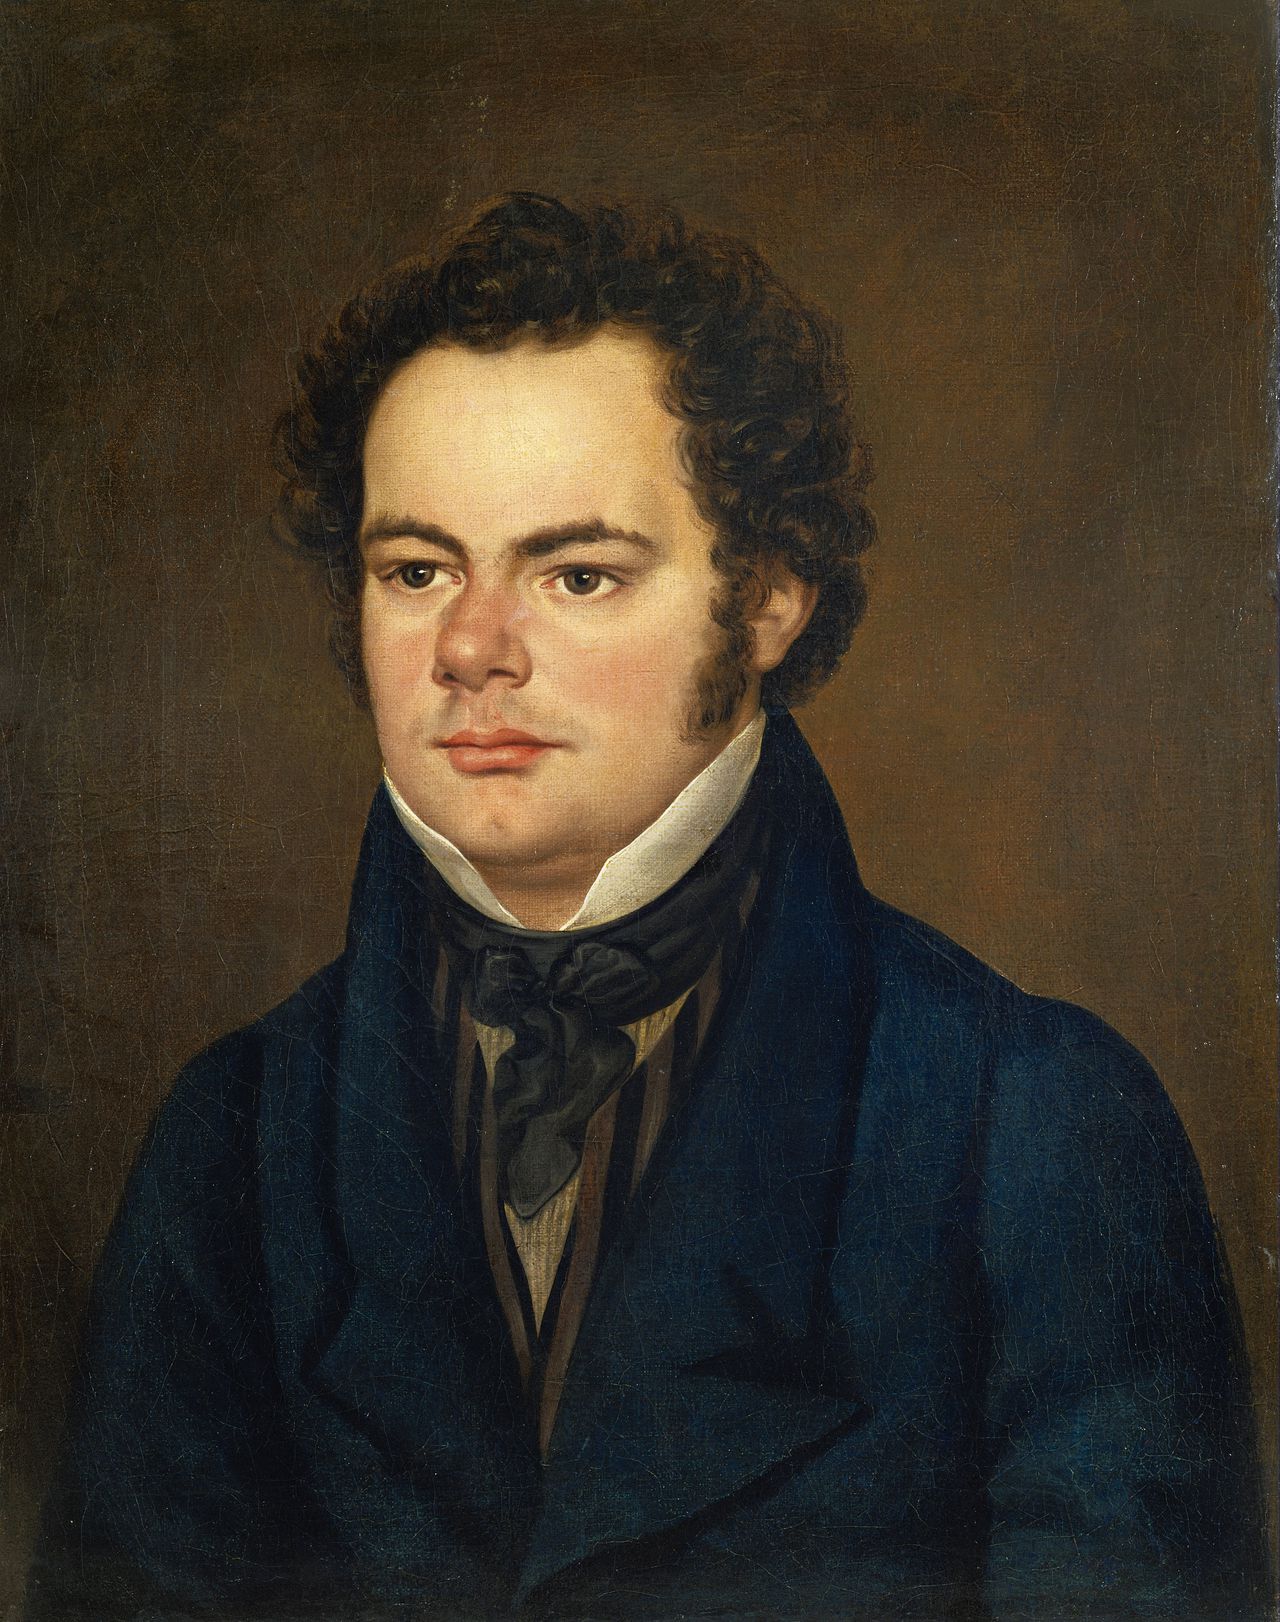 De mythe ontrafeld: Schubert was een klein, zwetend, nogal saai mannetje 